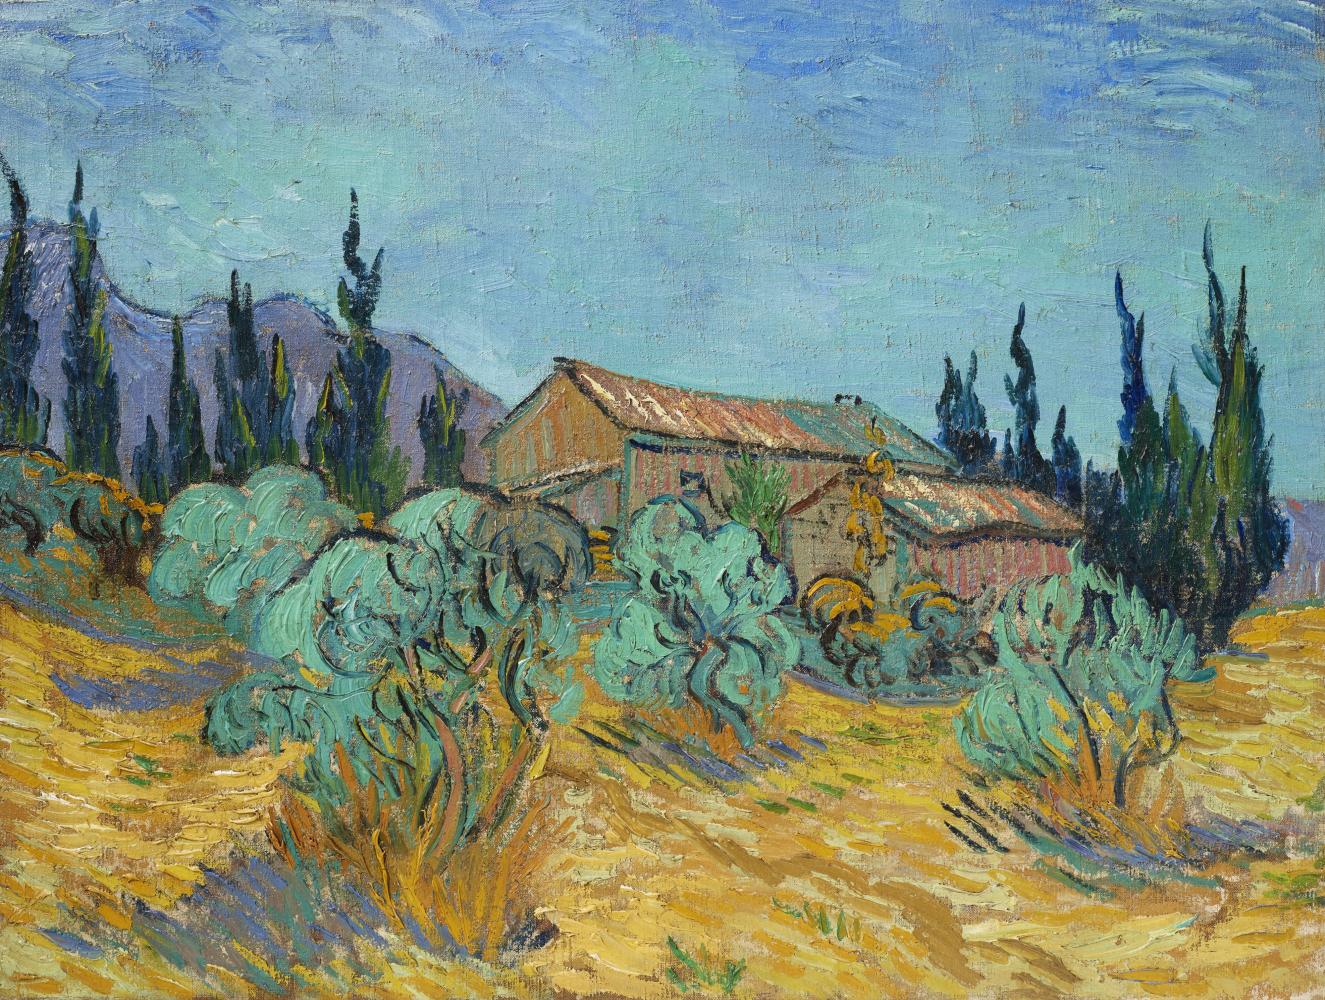 "Cabanes de bois parmi les oliviers et cyprès" von Vincent van Gogh